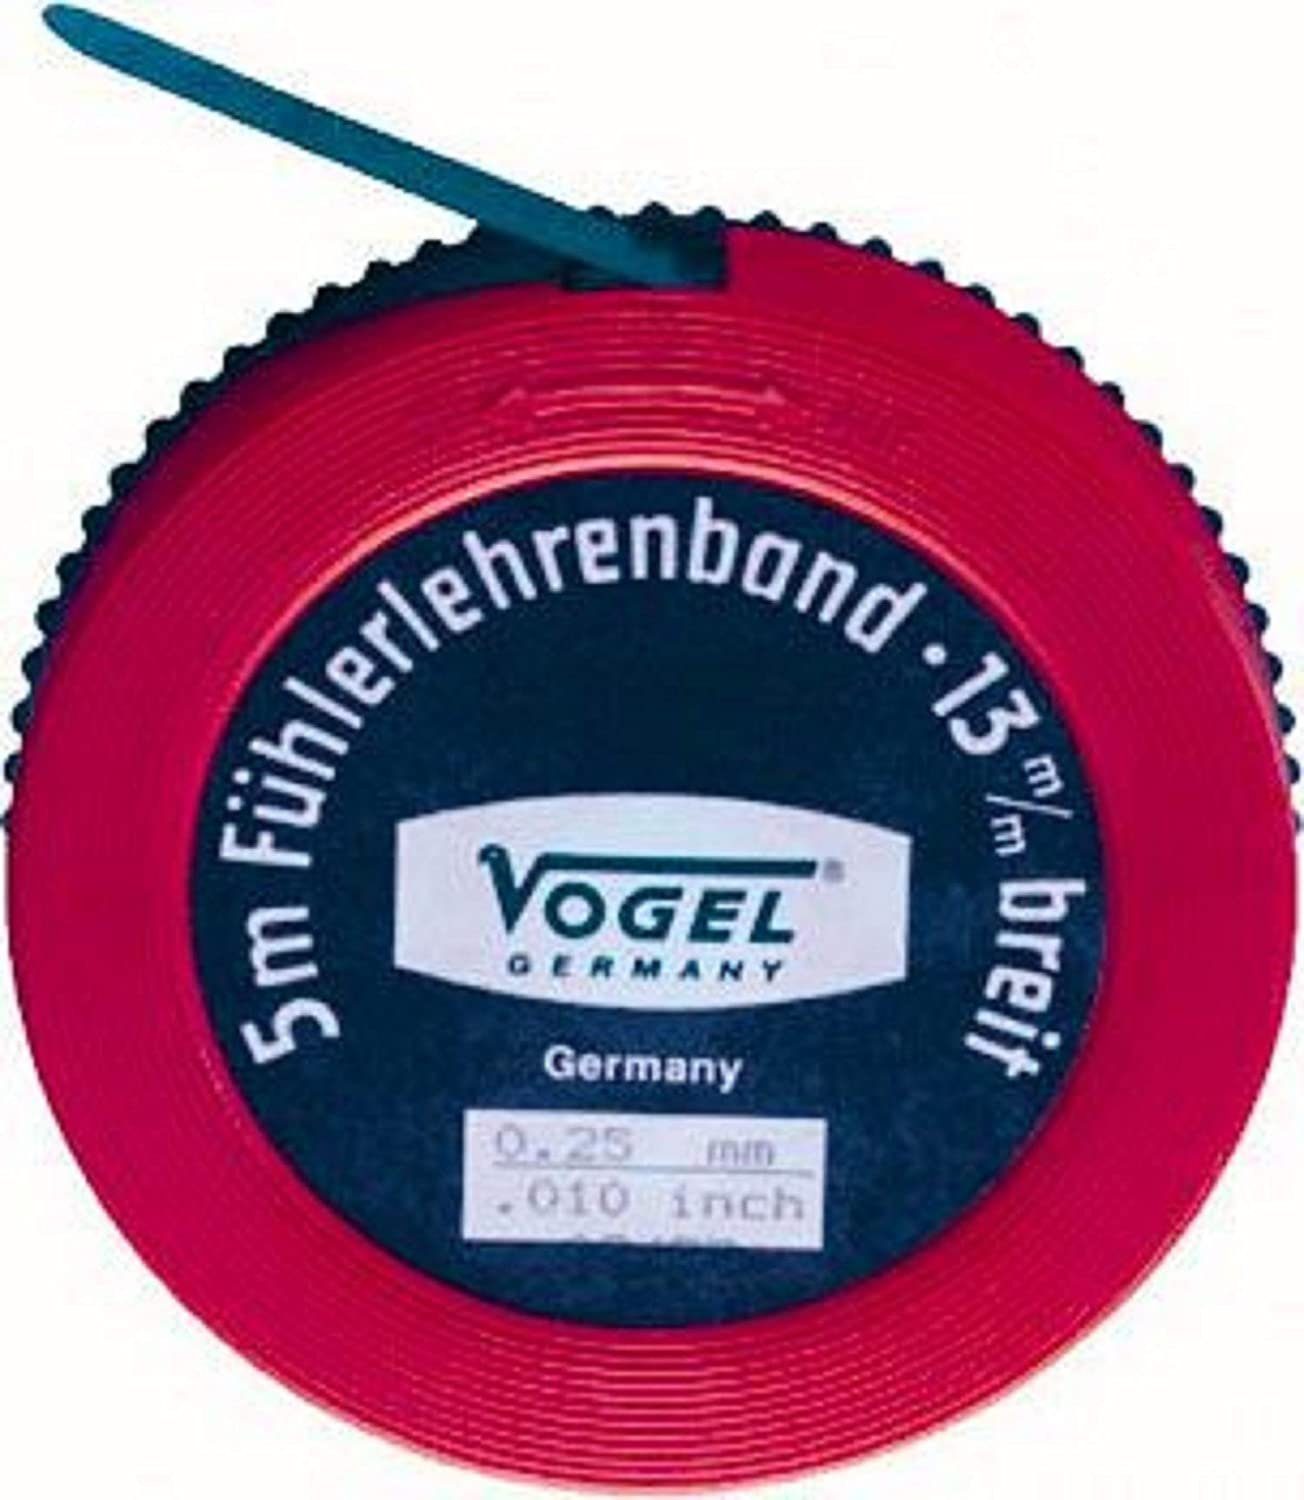 Vogel Germany Fühlerlehre Vogel Germany Fühlerlehrenband 5 m Messbereich 0,10 mm Federstahl